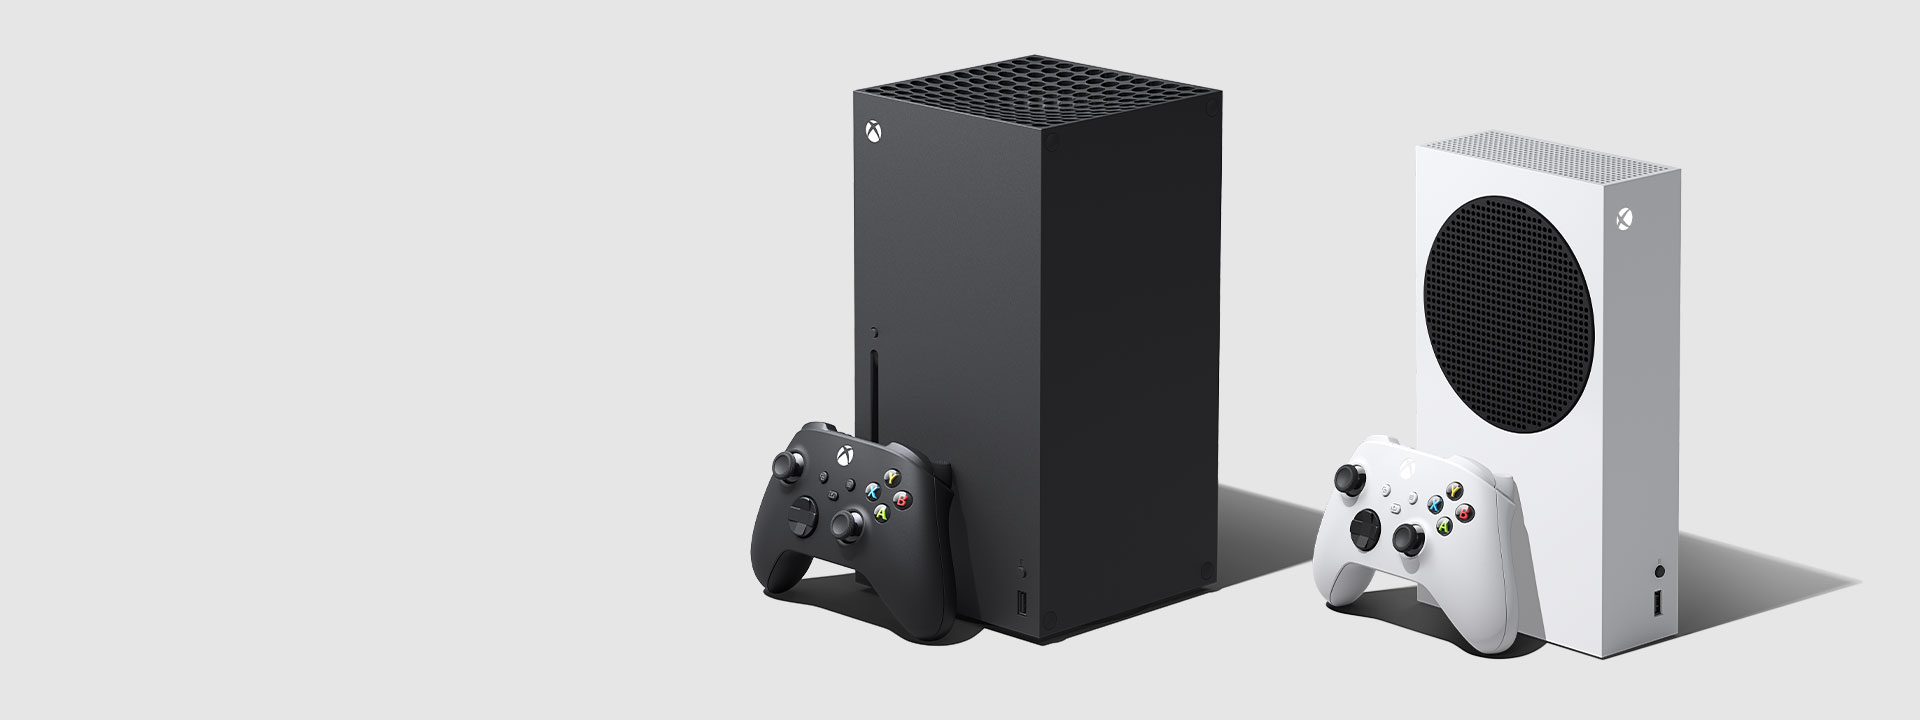  Staande Xbox Series X met zwarte Xbox-controller en staande Xbox Series S met witte Xbox-controller